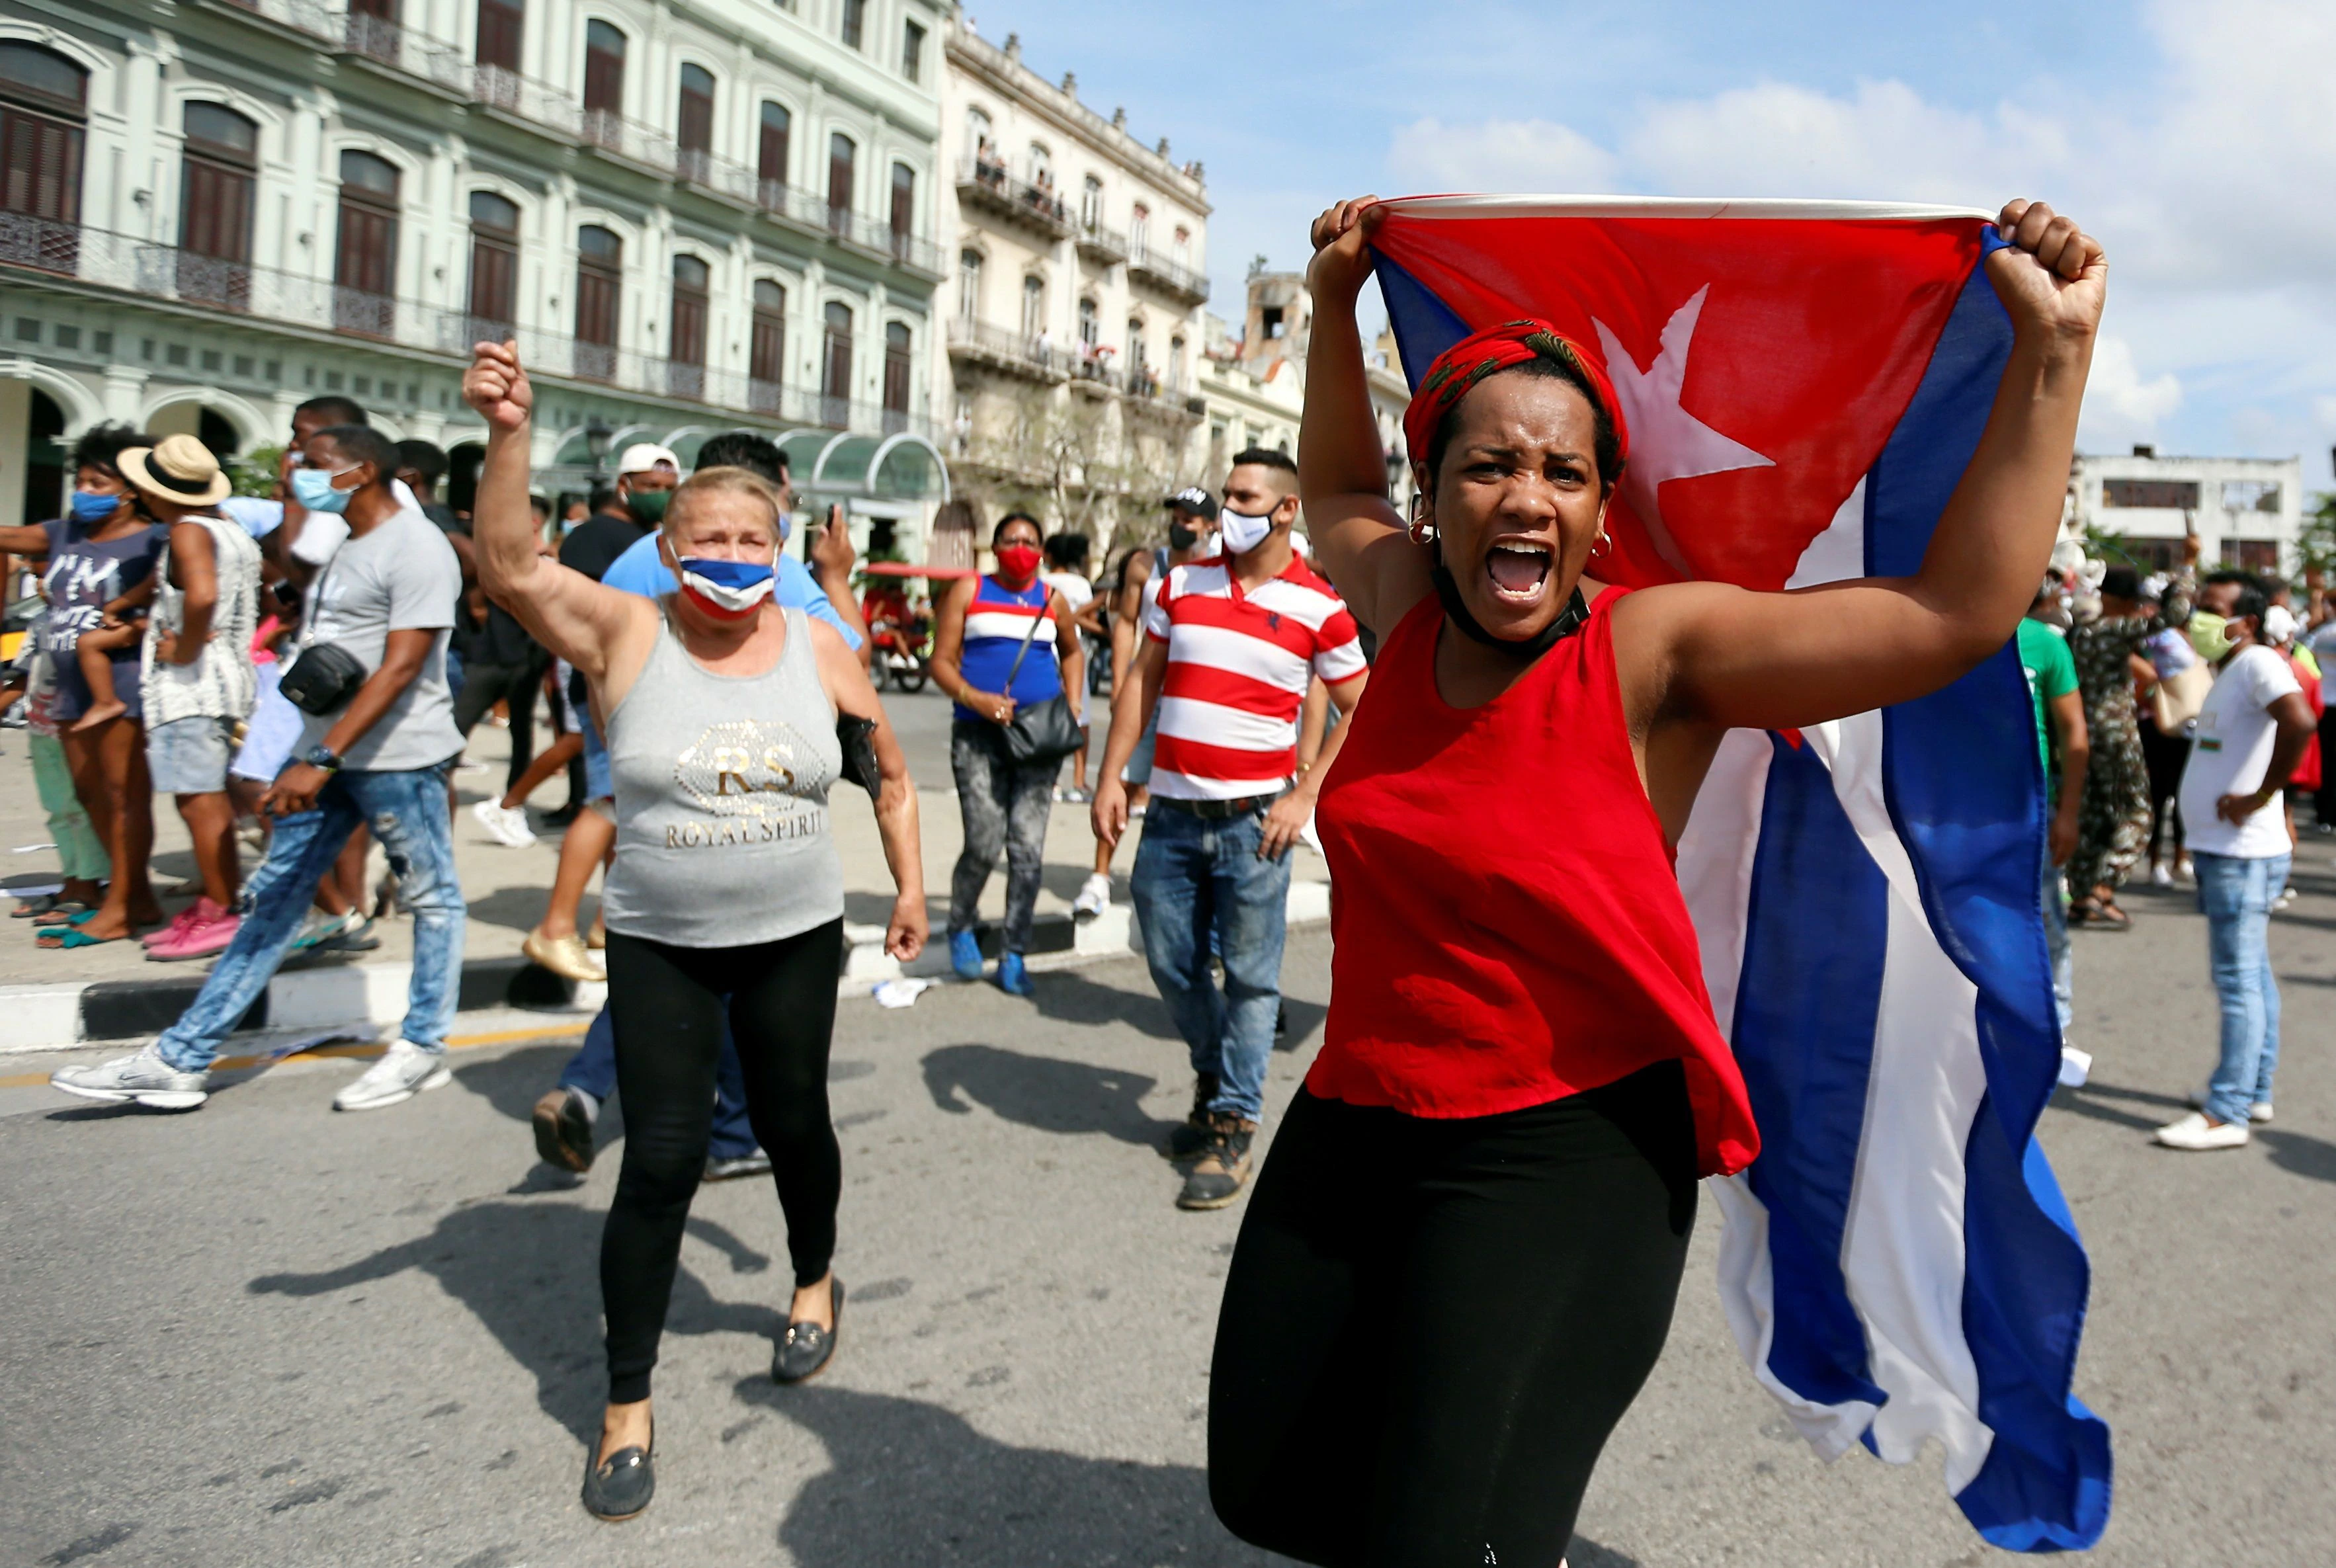 Las protestas contra el régimen cubano, en imágenes